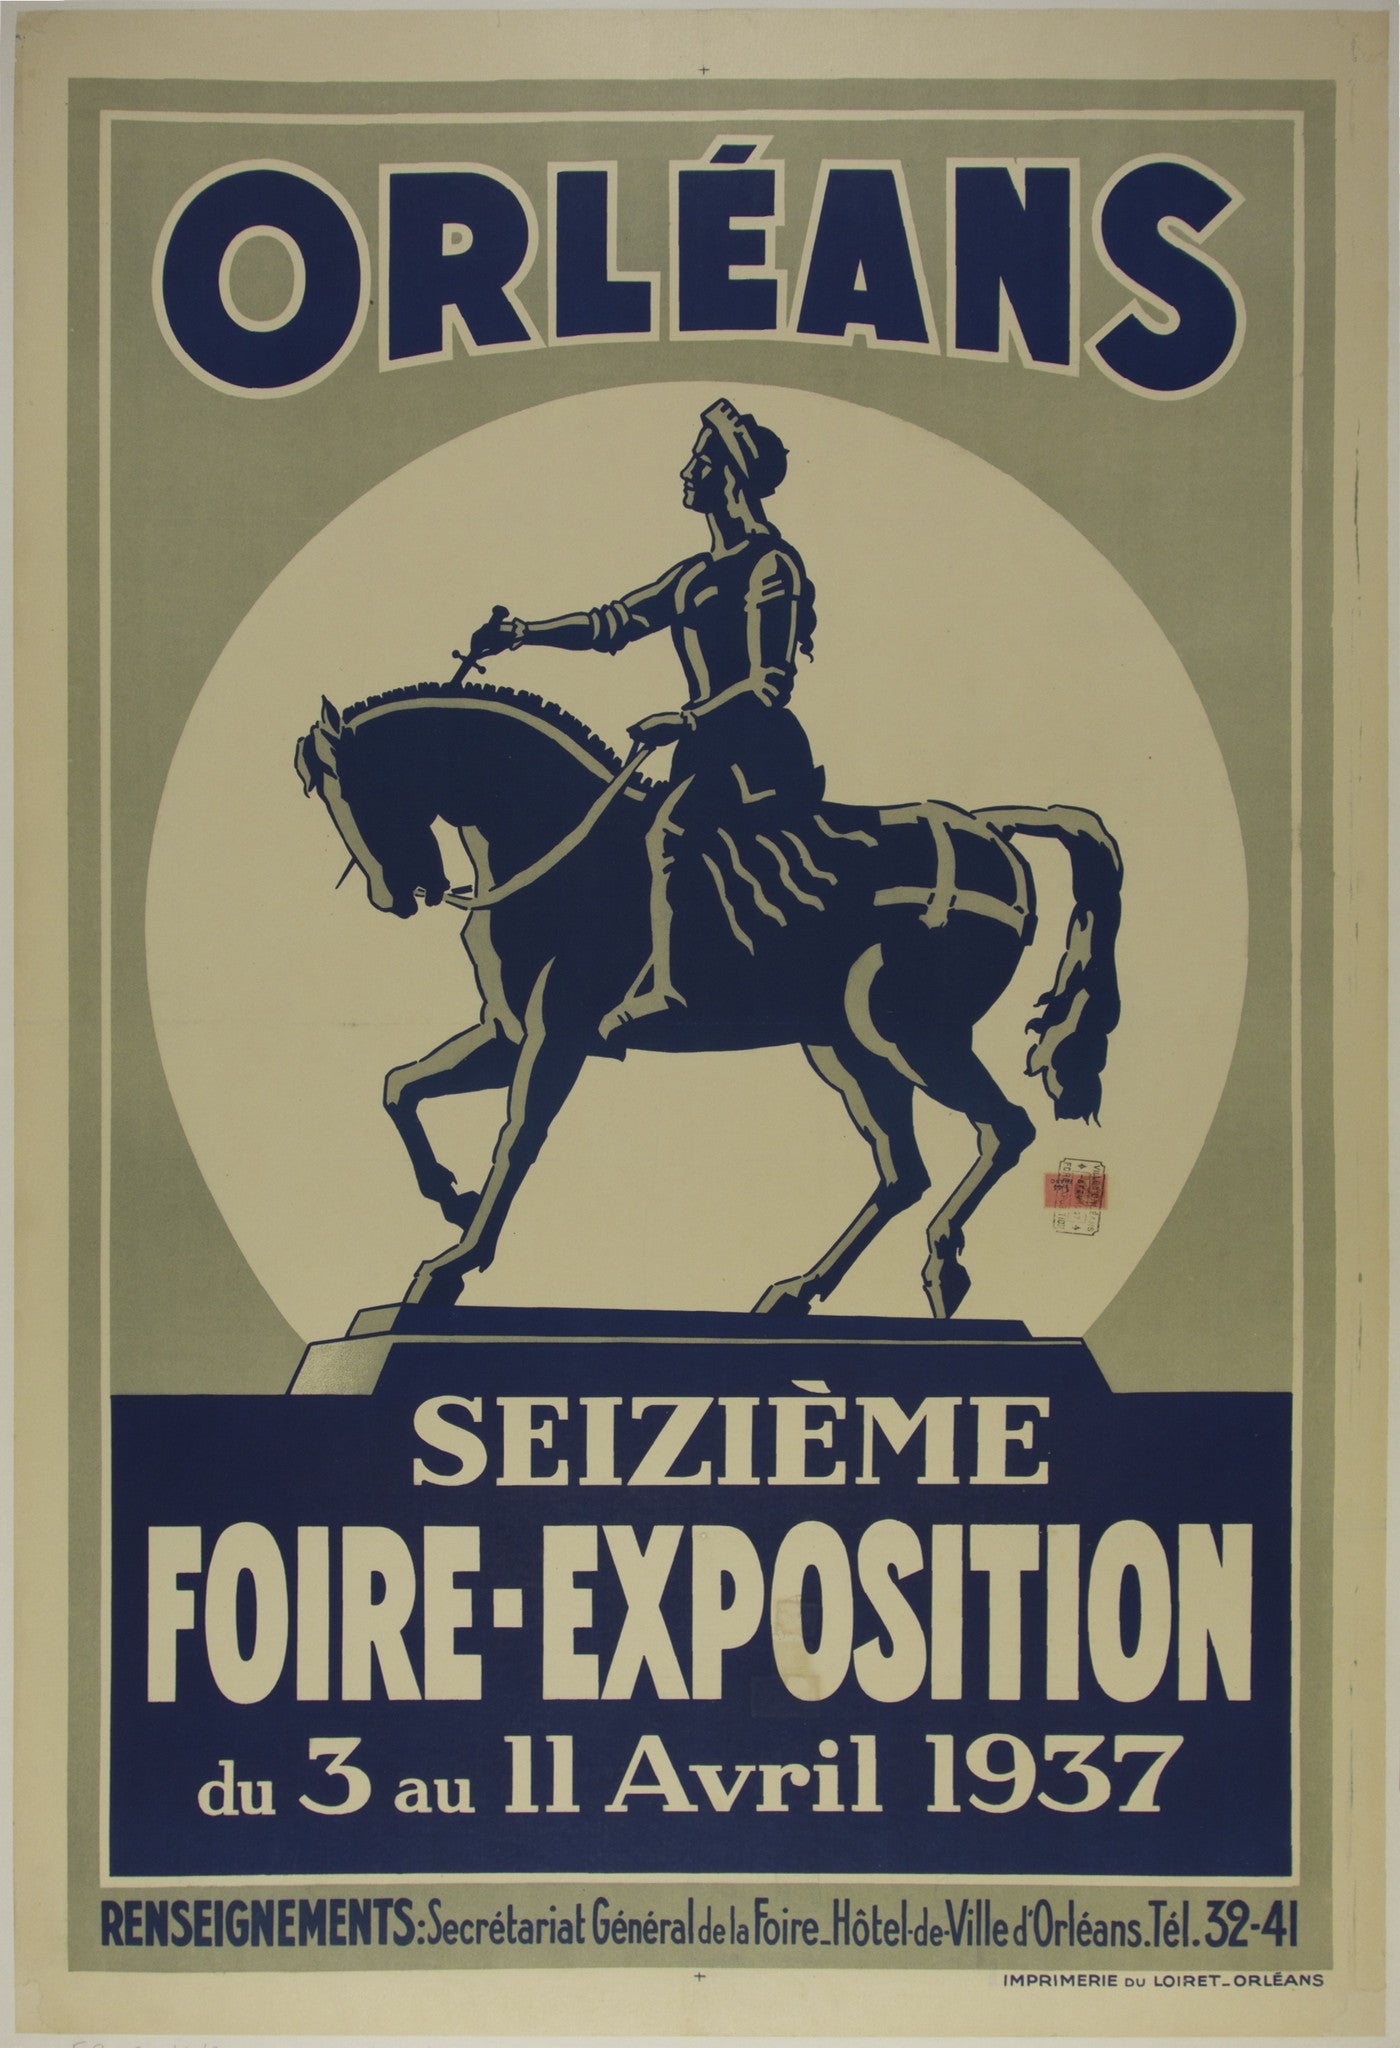 Orléans Foire-Exposition